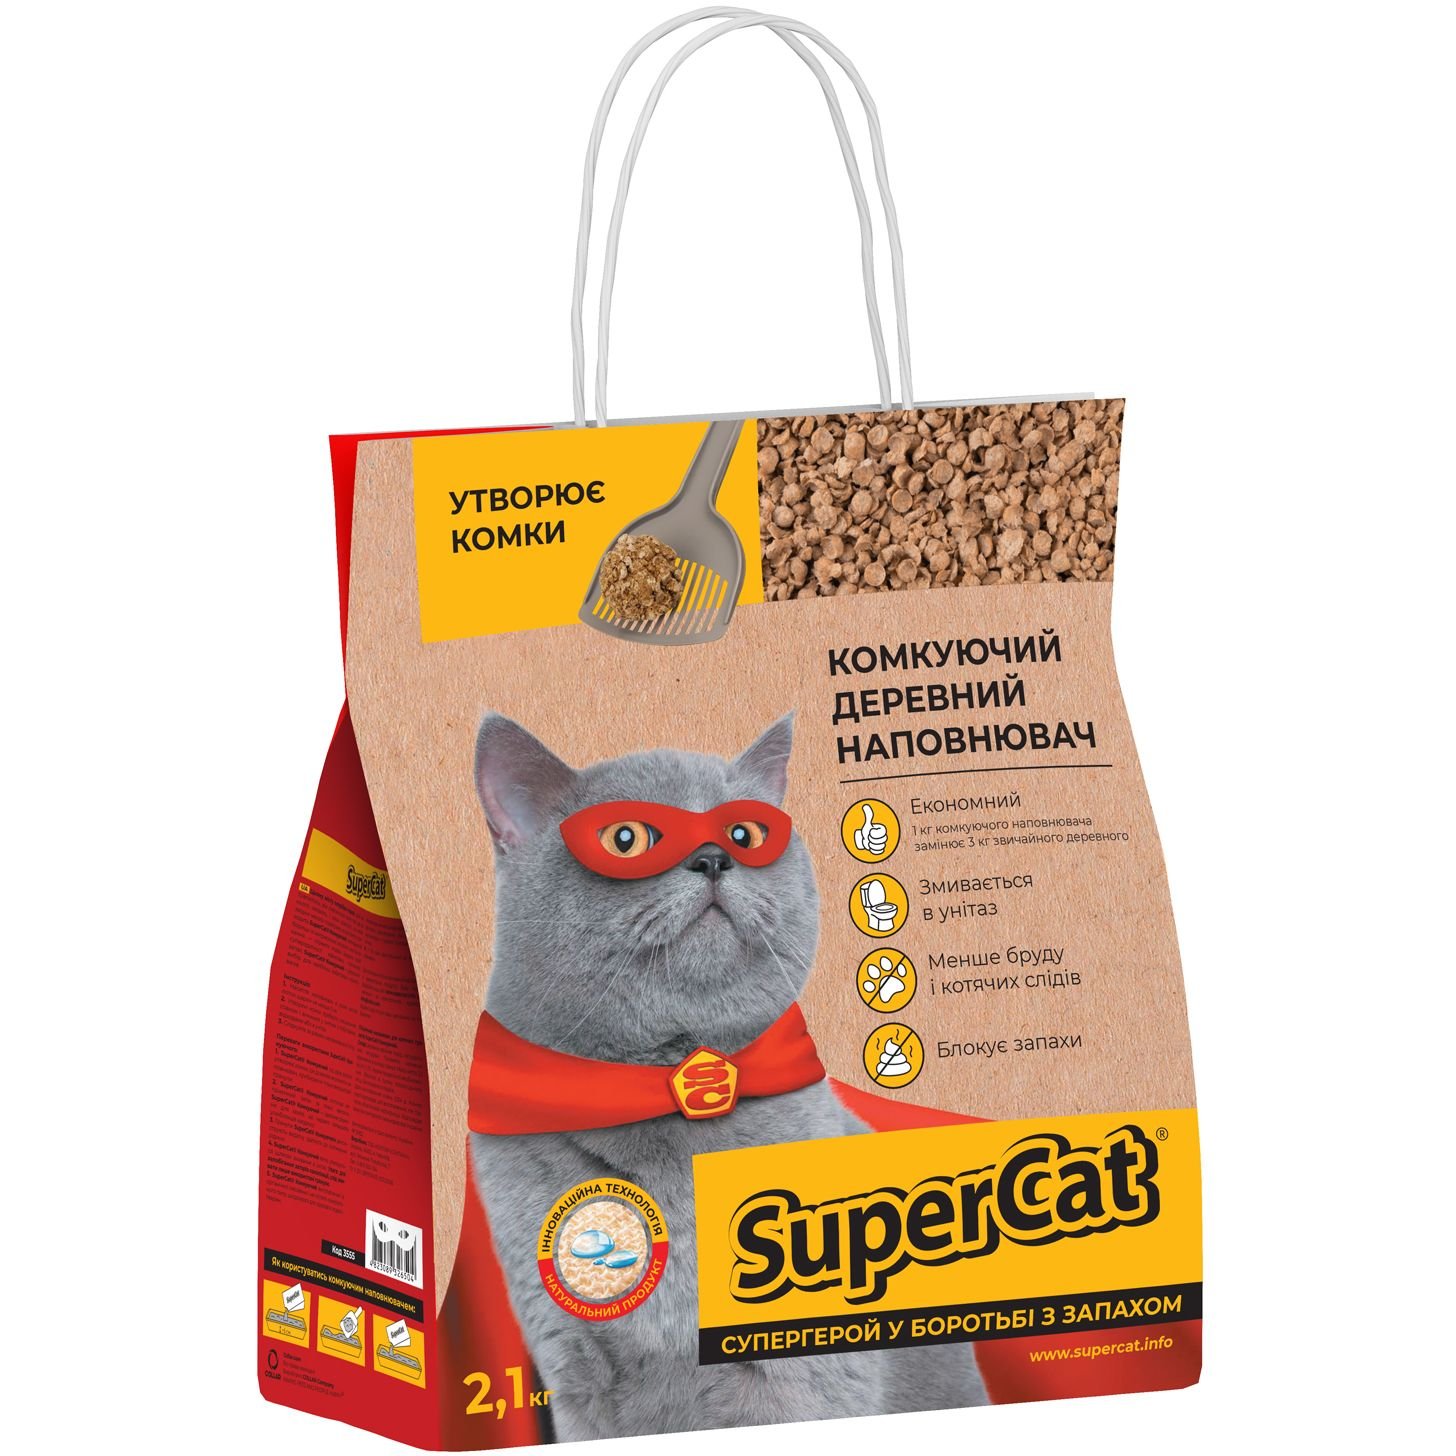 Фото - Котячий наповнювач Super Cat Наповнювач для котів SuperCat, що комкується, 2,1 кг  (3555)